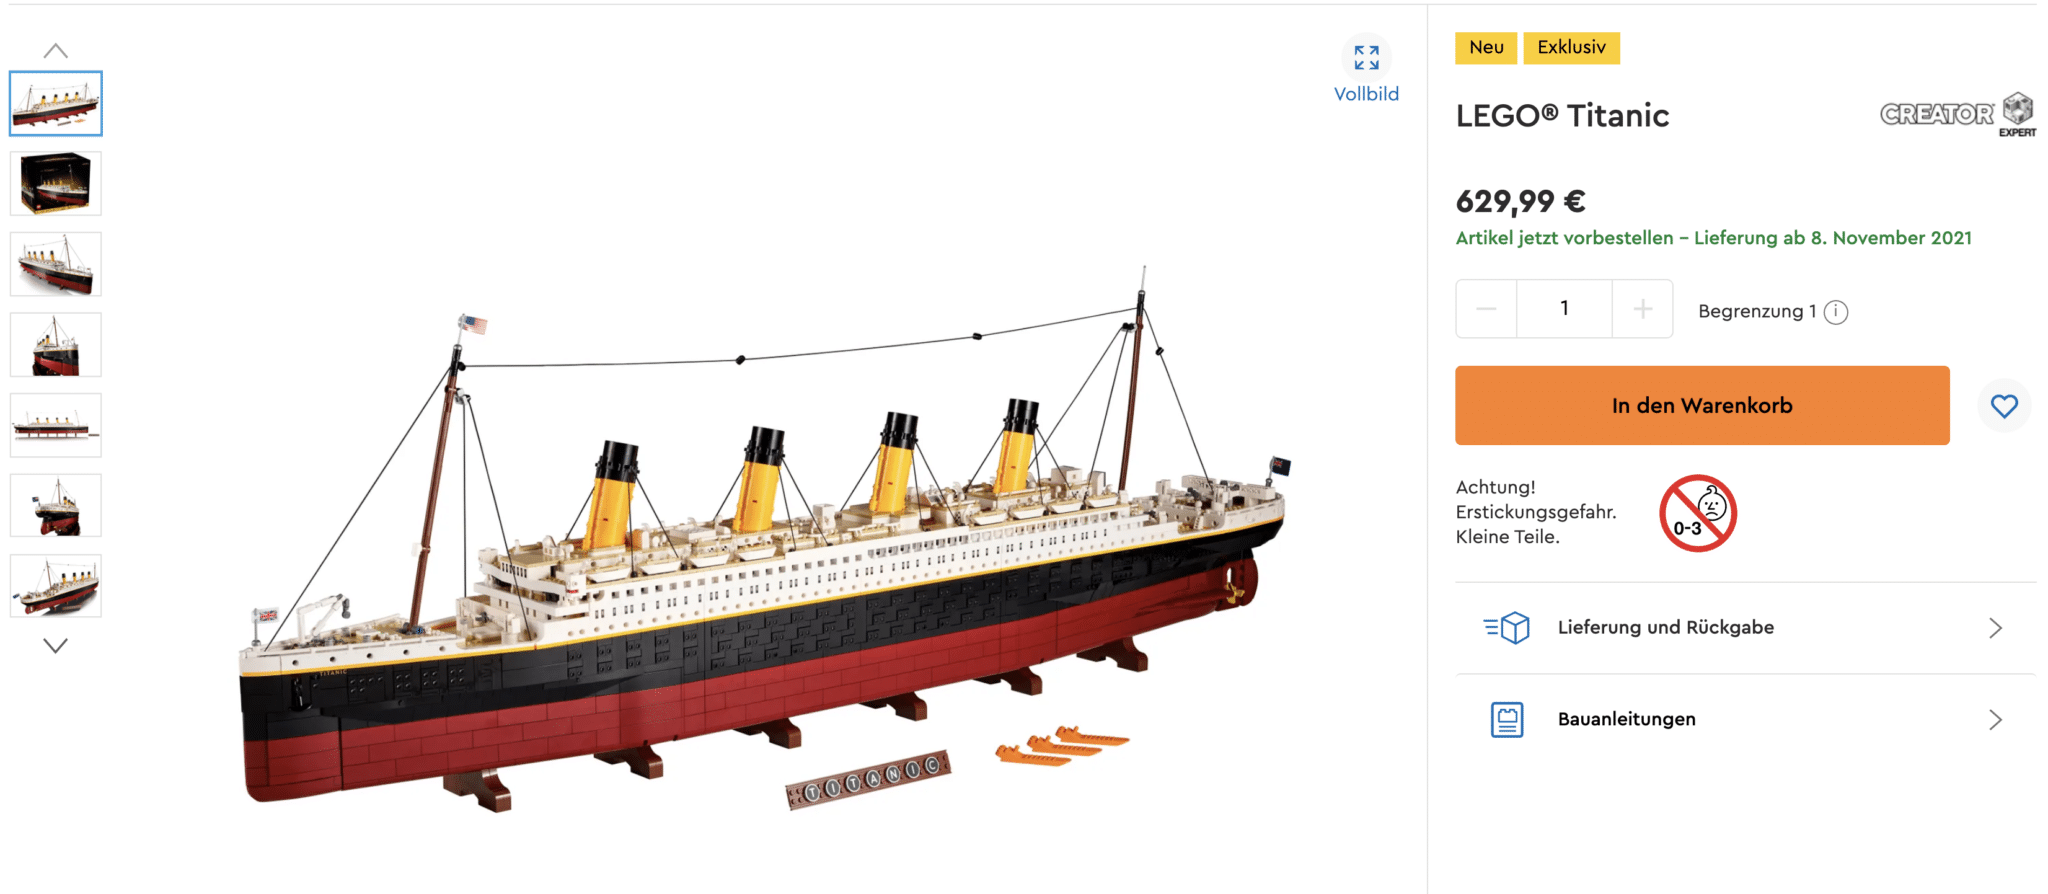 LEGO Titanic 10294 Vorbestellung Gestartet